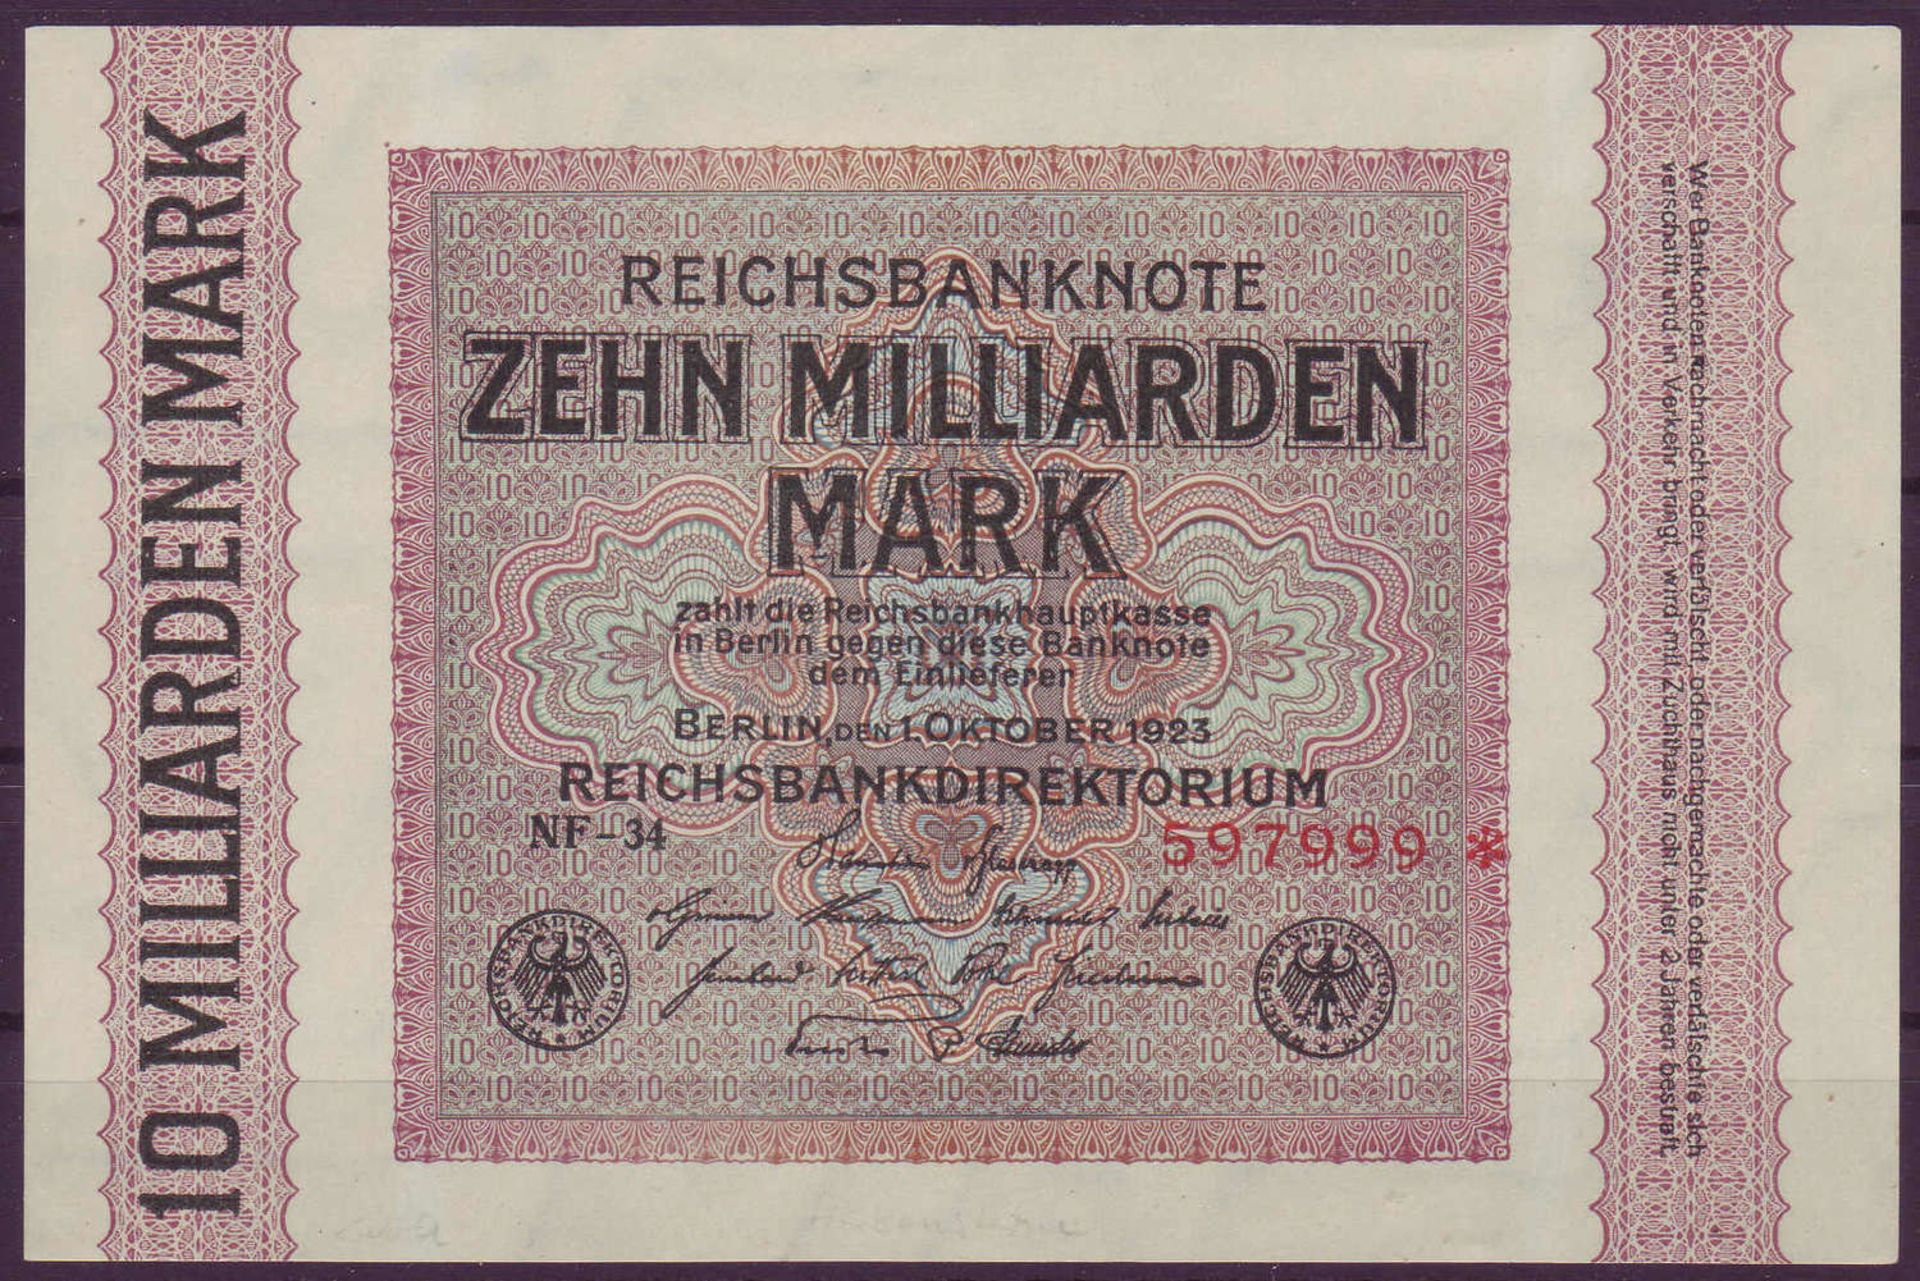 Weimarer Republik, Deutsche Reichsbank 1918 - 23. Zehn Milliarden Mark. Rosenberg 114f. Zustand I.